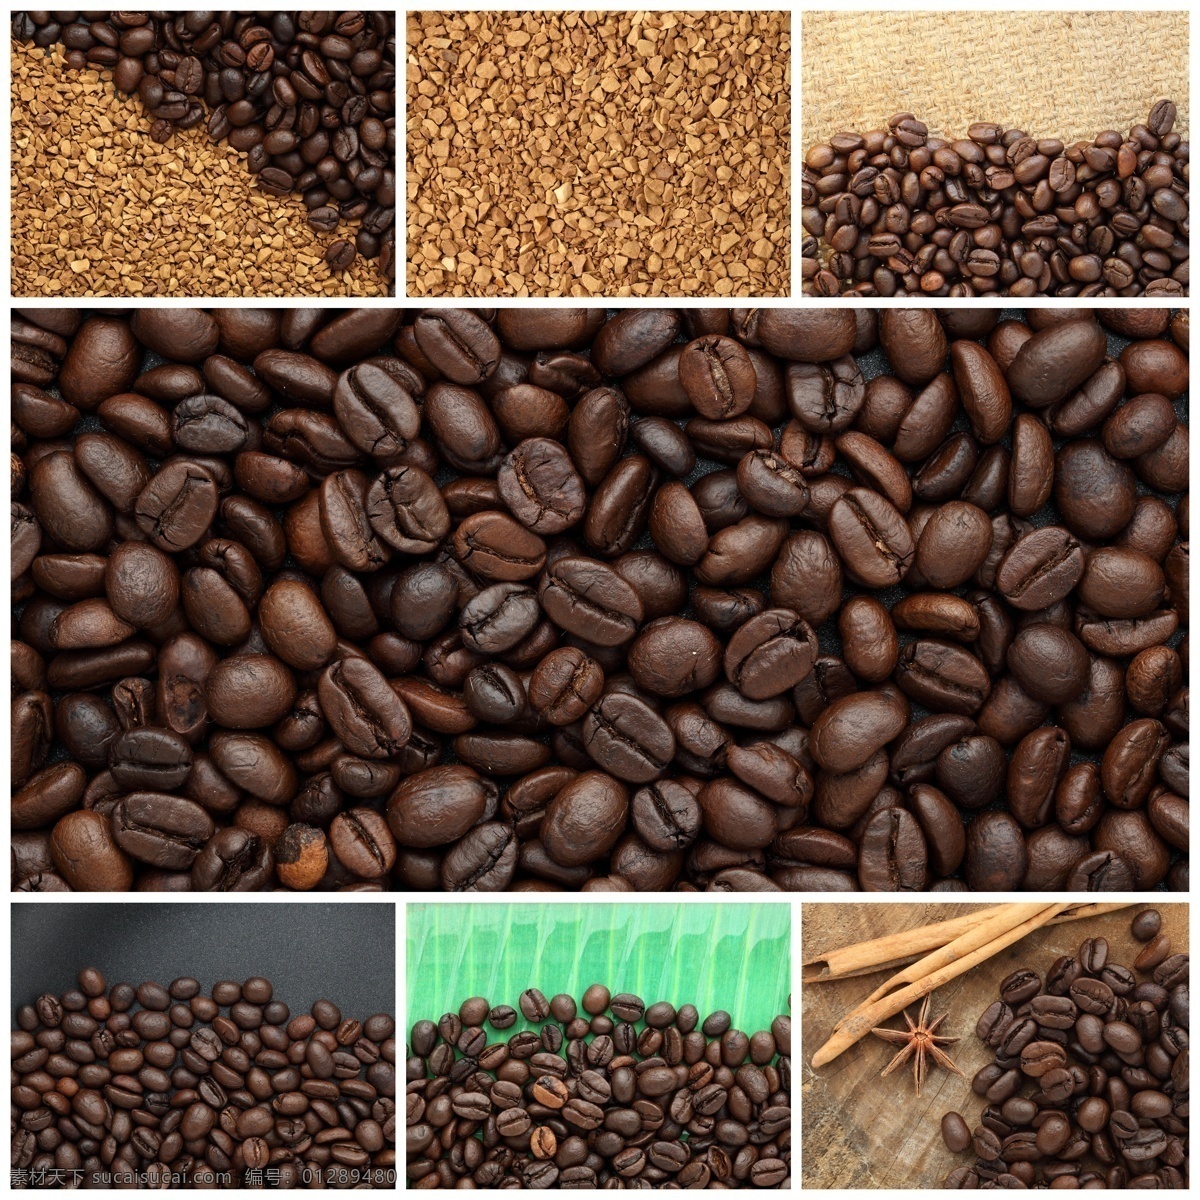 桂皮 八角 咖啡豆 香料 咖啡 咖啡原料 咖啡果 其他类别 餐饮美食 黑色